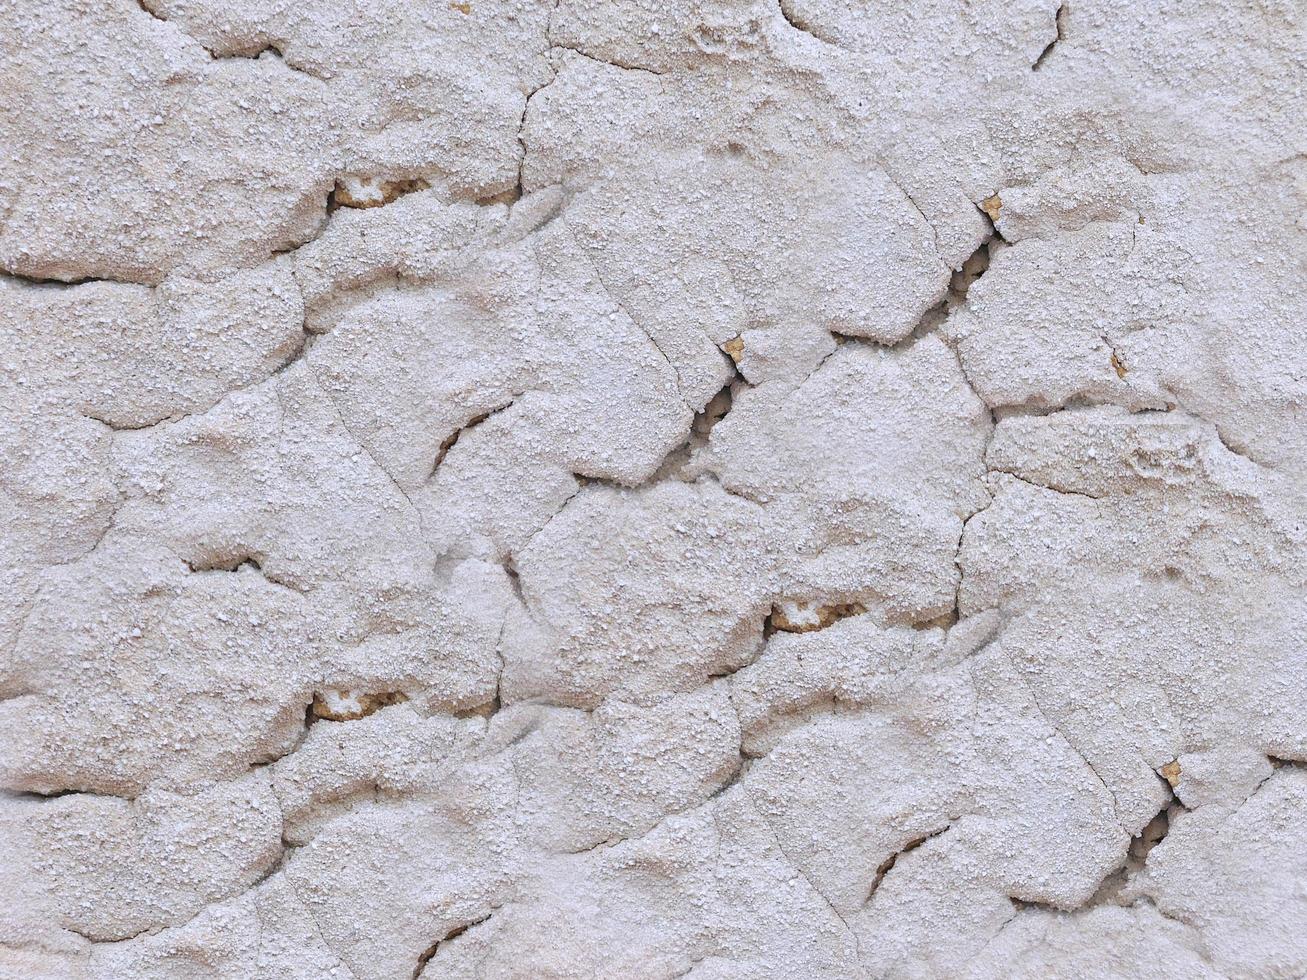 Primer plano de la pared de piedra o roca de fondo o textura foto